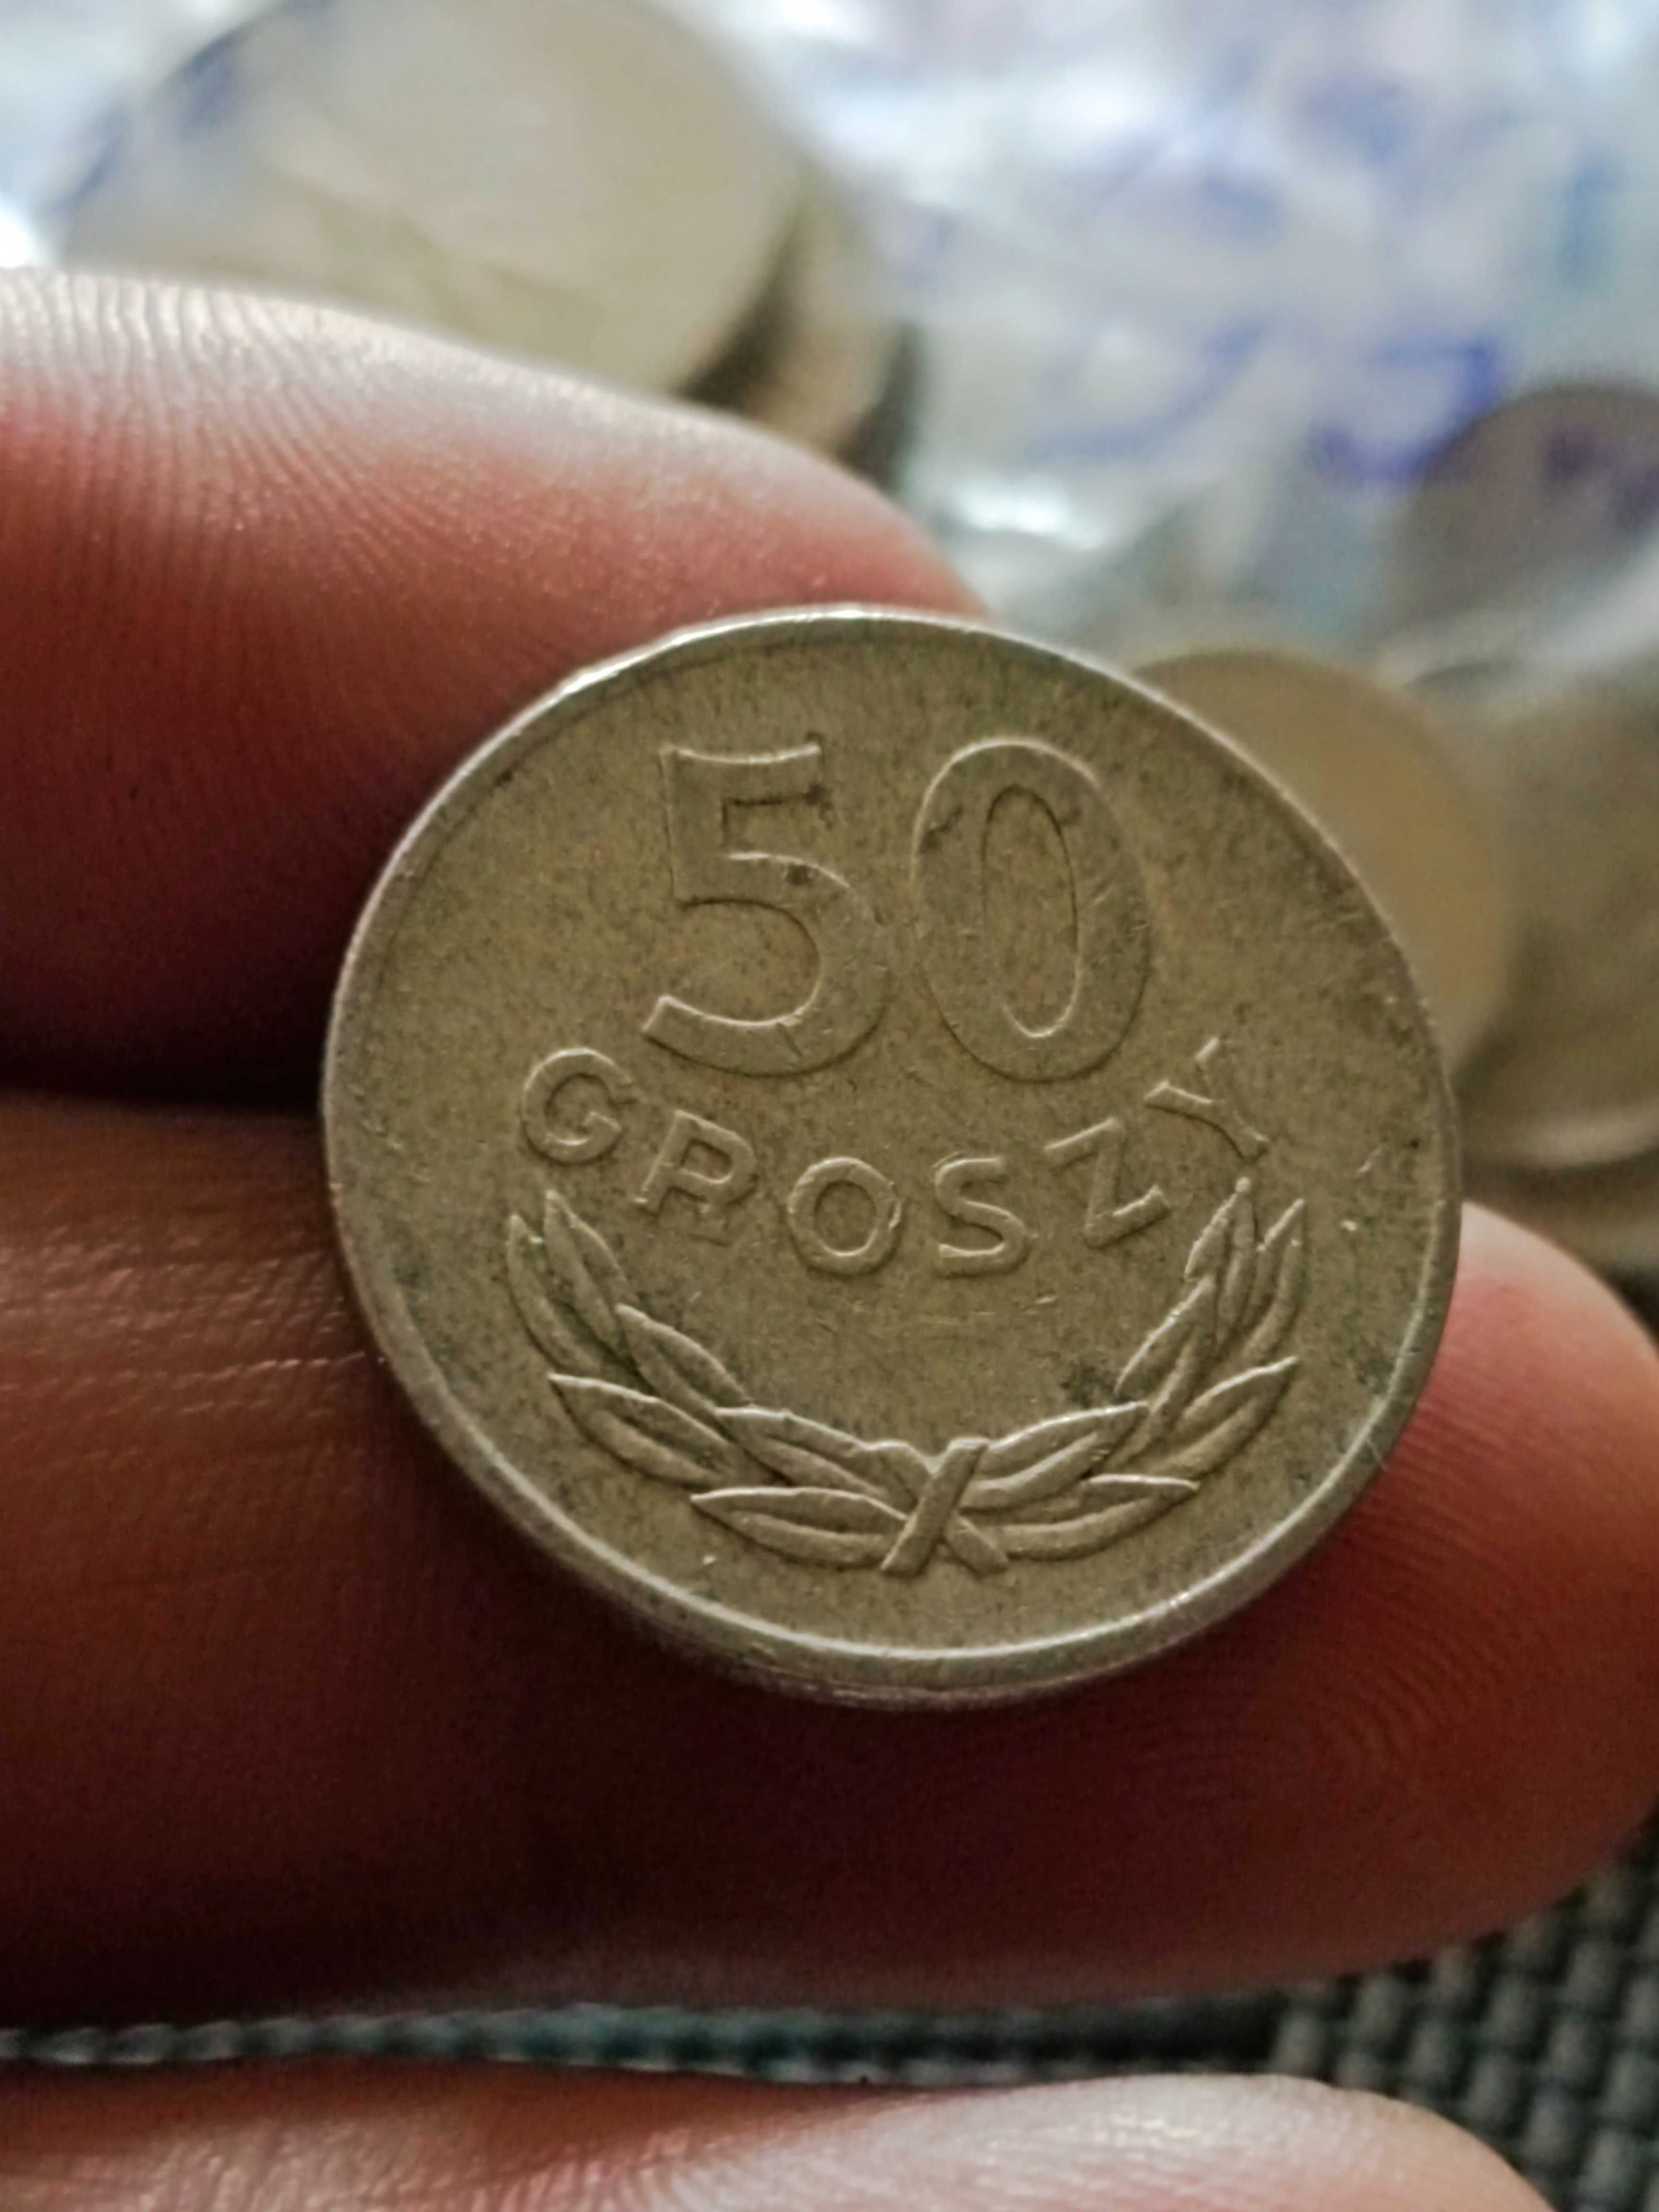 sprzedan druga monete 50 groszy zzm 1973